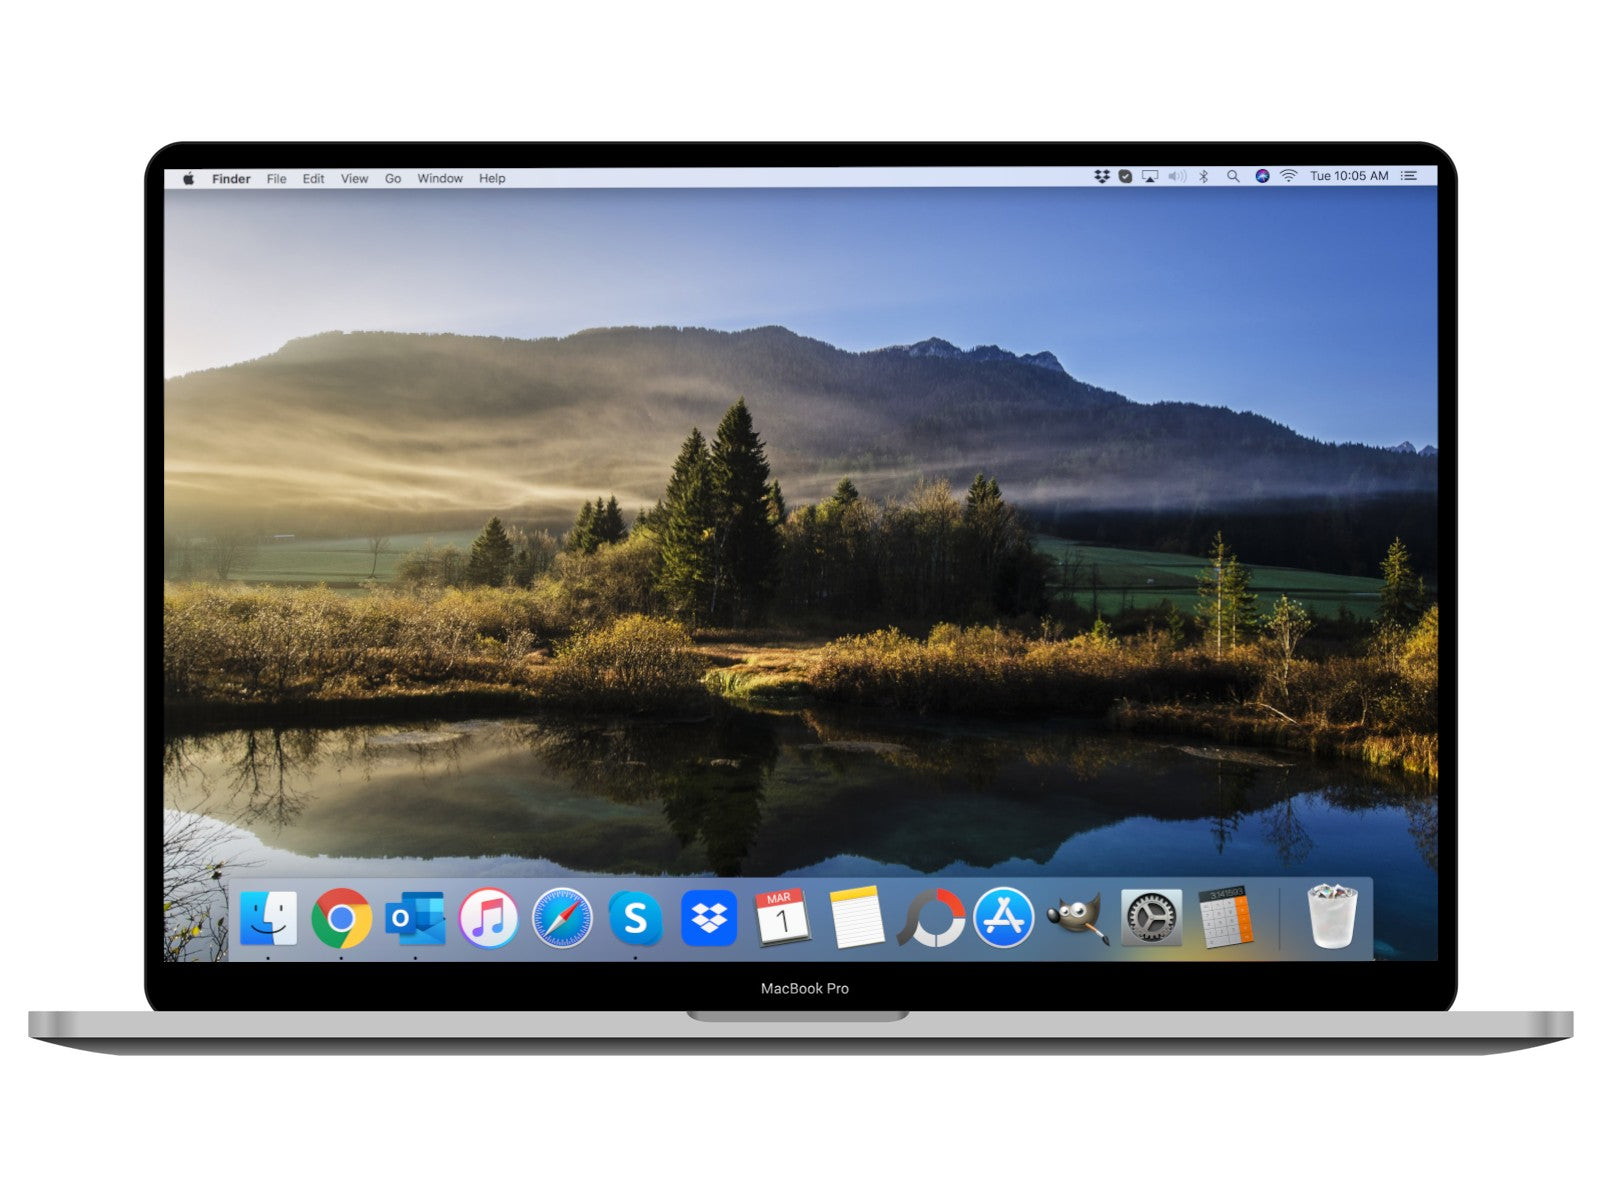 MacBook Pro 2019 16-inch Space Grey 2.6 GHz i7, 16GB RAM